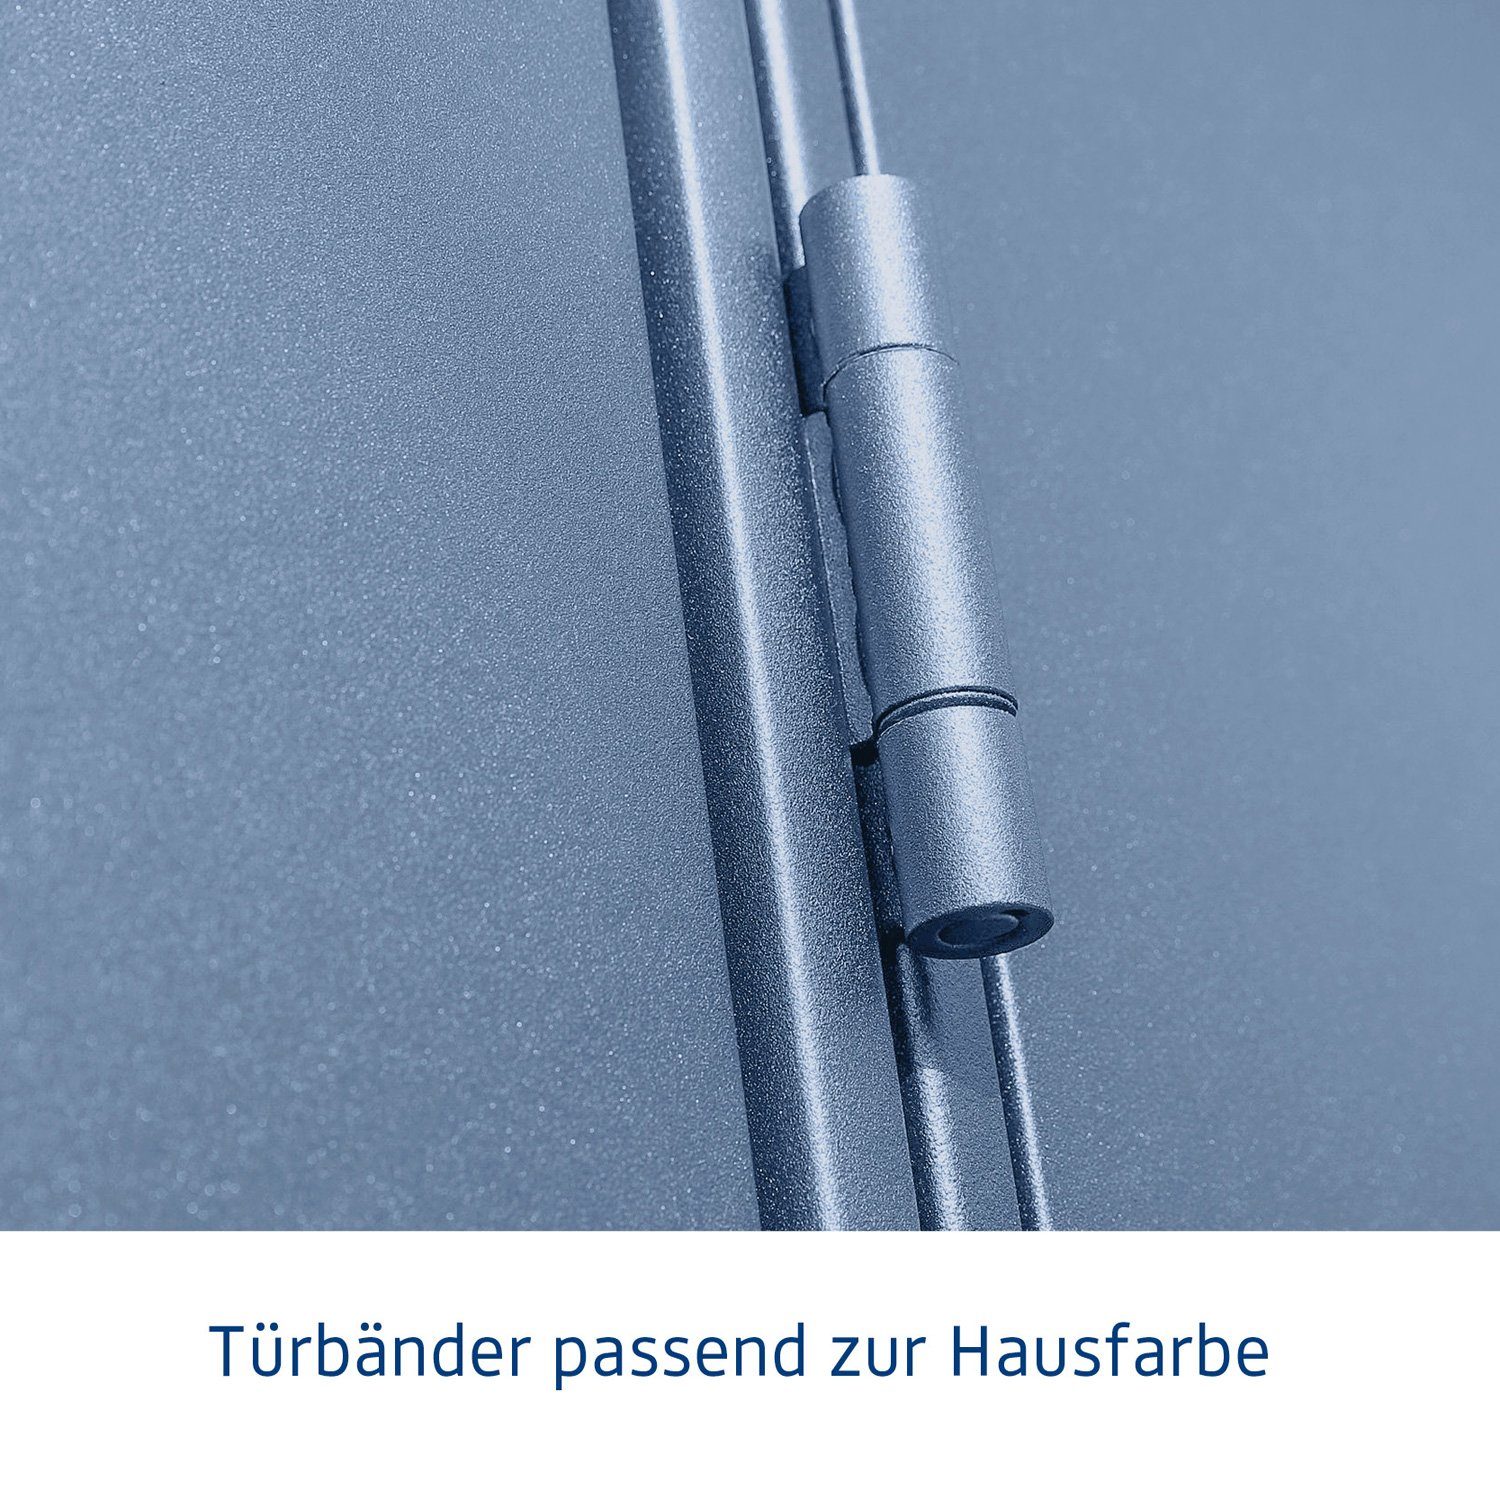 Hörmann 3, Ecostar Metall-Gerätehaus Gerätehaus mit Elegant taubenblau Typ 2-flügelige Pultdach Tür